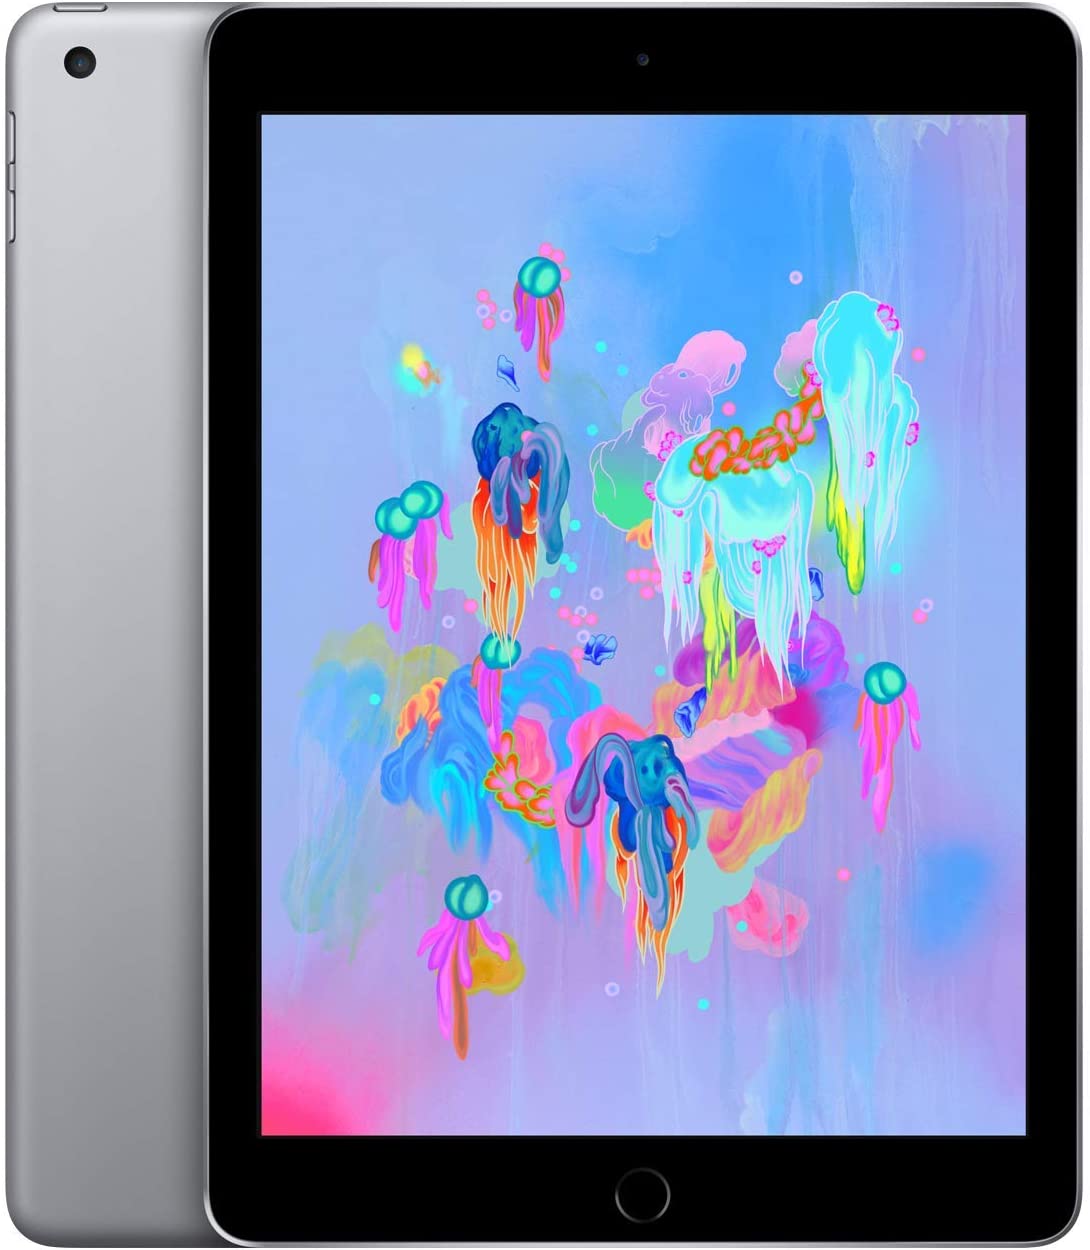 Apple iPad 6 32GB Wi-Fi Space Gray (Like New) Free Shipping